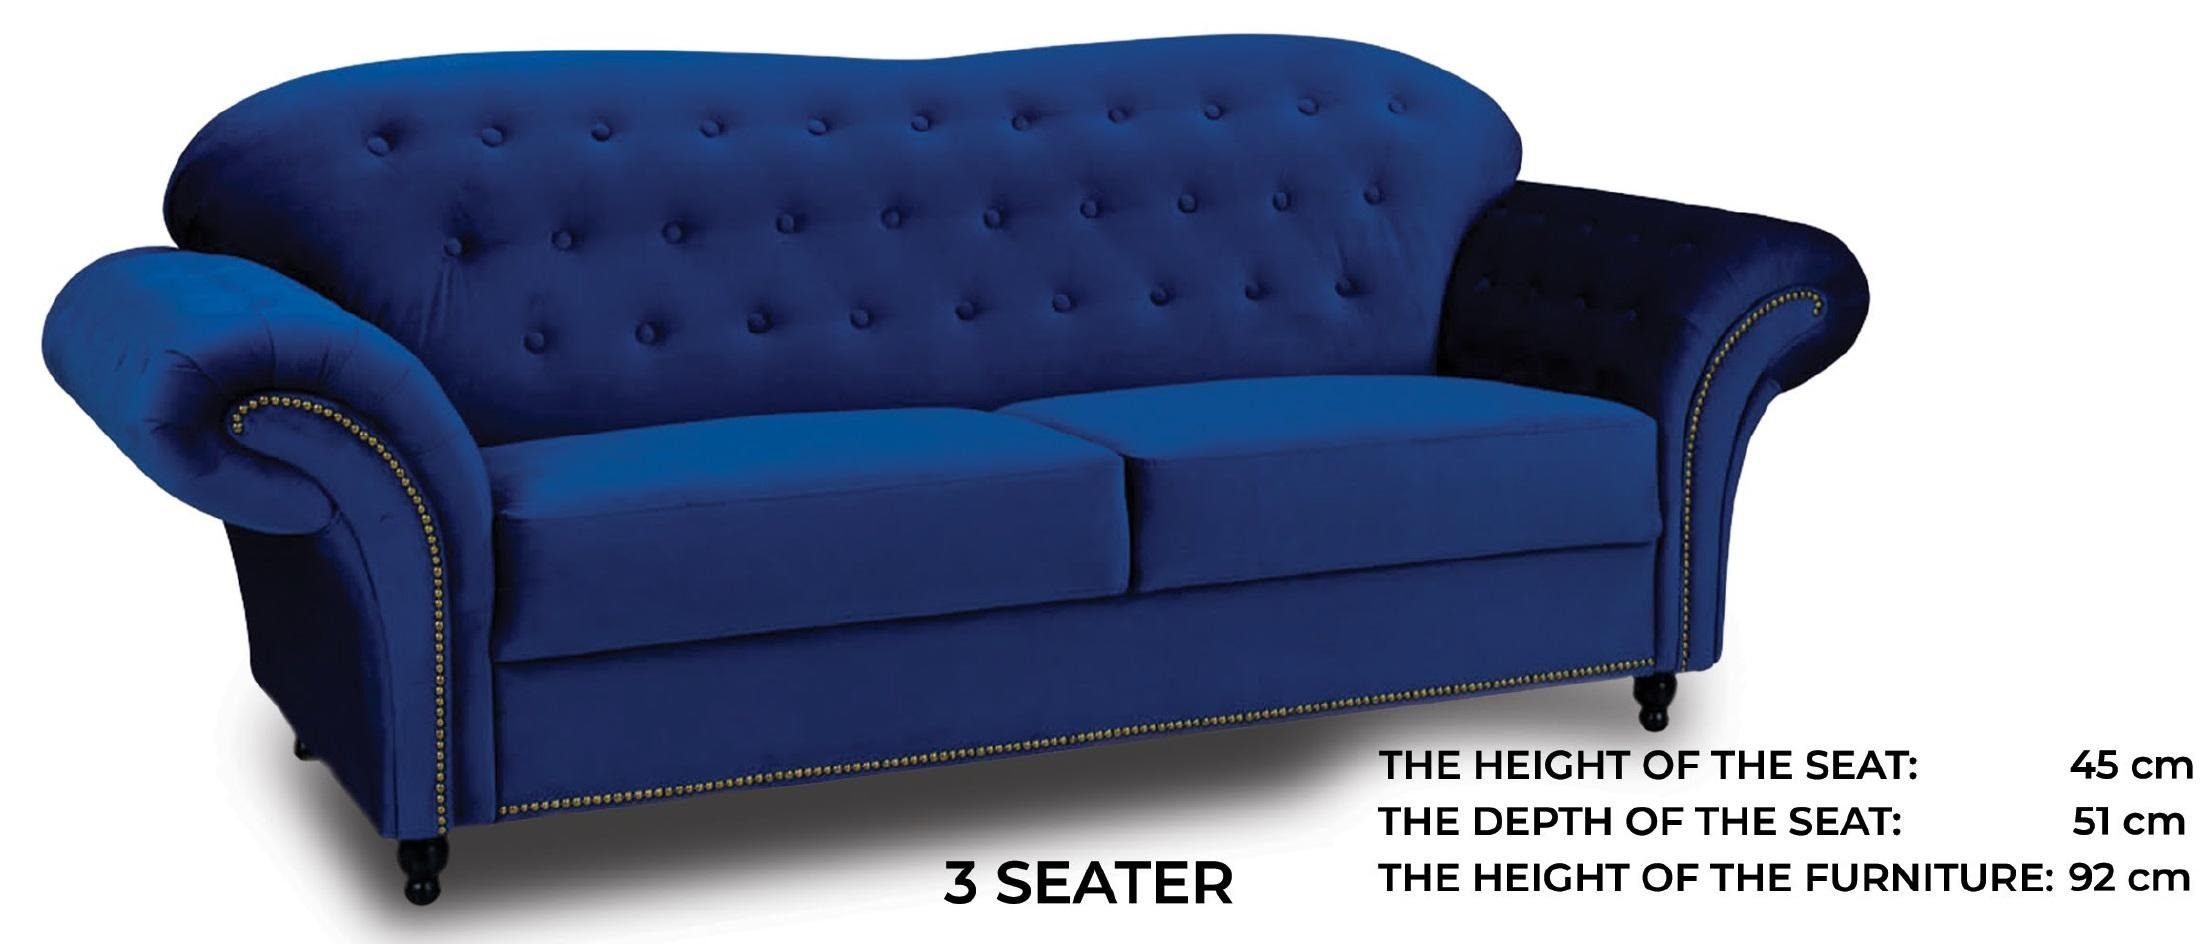 Dreisitzer mit Chesterfield JVmoebel Europe Nieten luxus Neu, in Sofa Made Polster Blauer